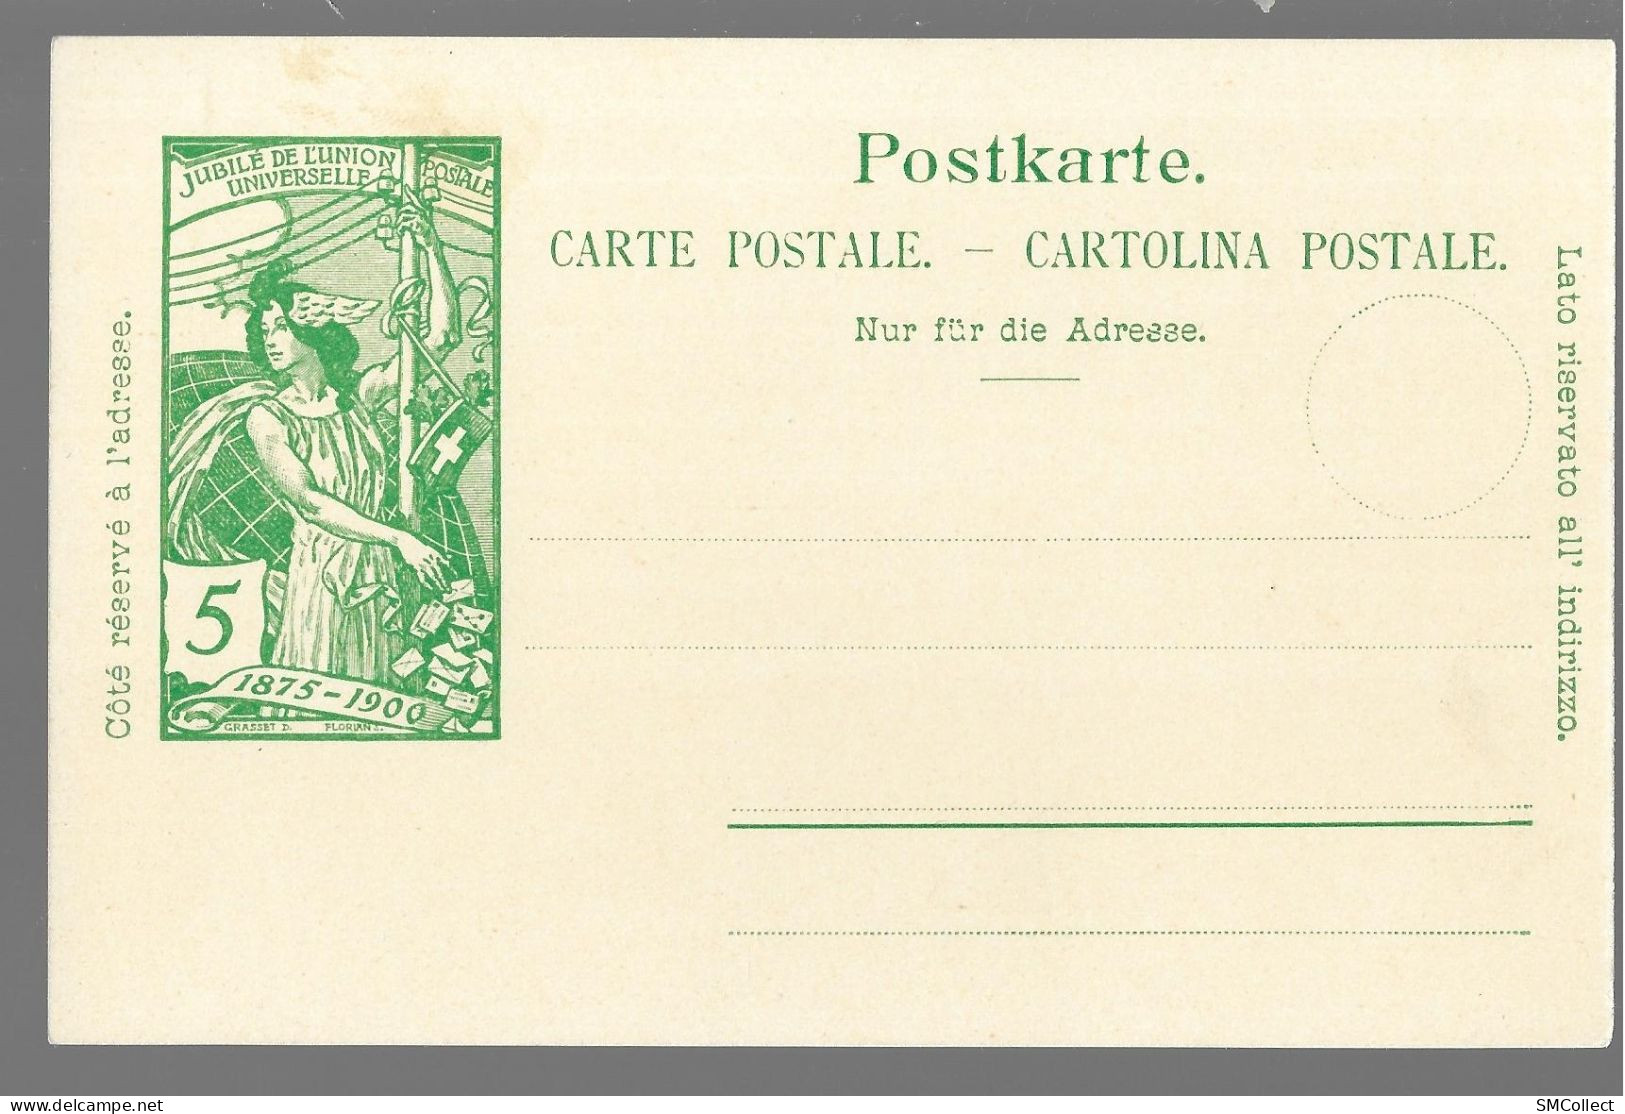 Suisse. Jubilé 1875-1900 De L'union Postale Universelle, Lot De 2 Entiers Postaux Vierges, 5 Et 10 Rappen (9917) - Ganzsachen